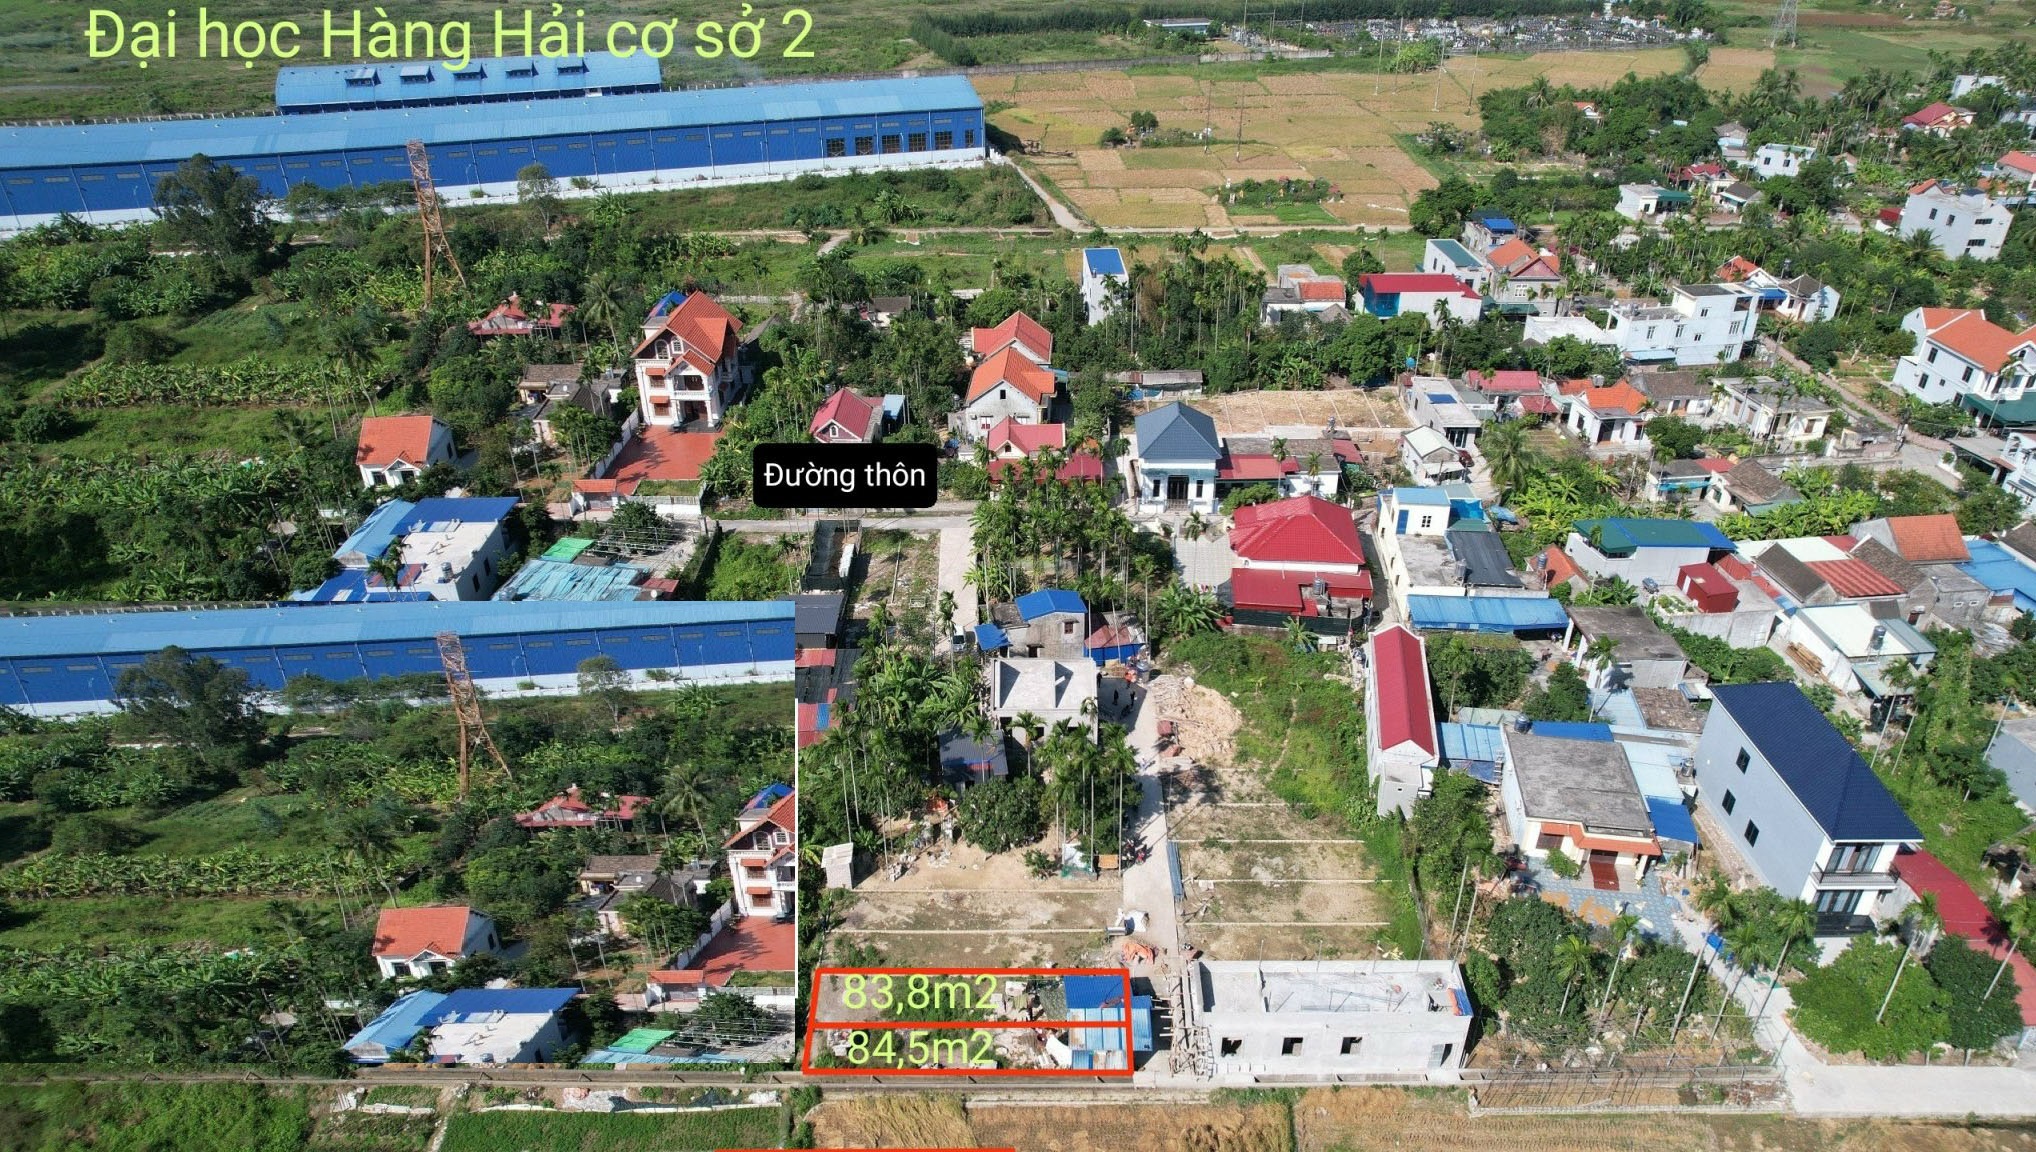  Cần bán lô đất gần đại học Hàng Hải tại Lâm Động , Thủy Nguyên, Hải Phòng